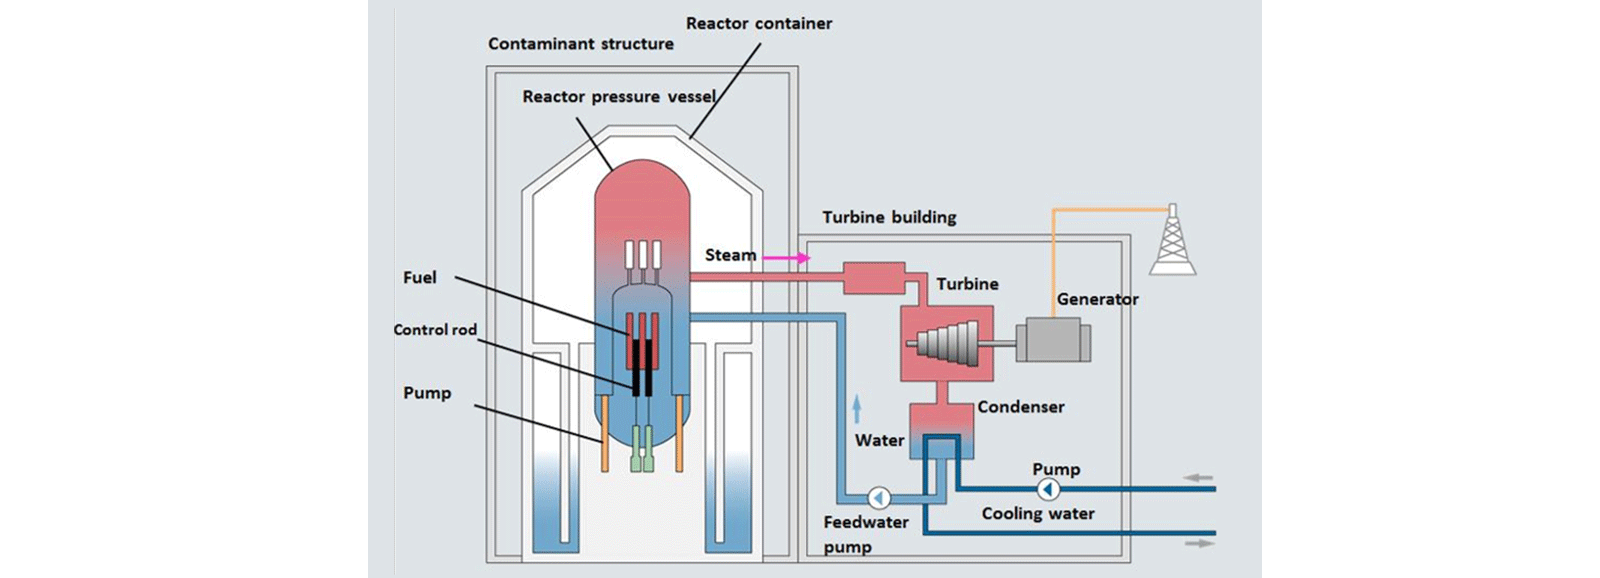 Атомные электростанции: реактор с кипящей водой (BWR)